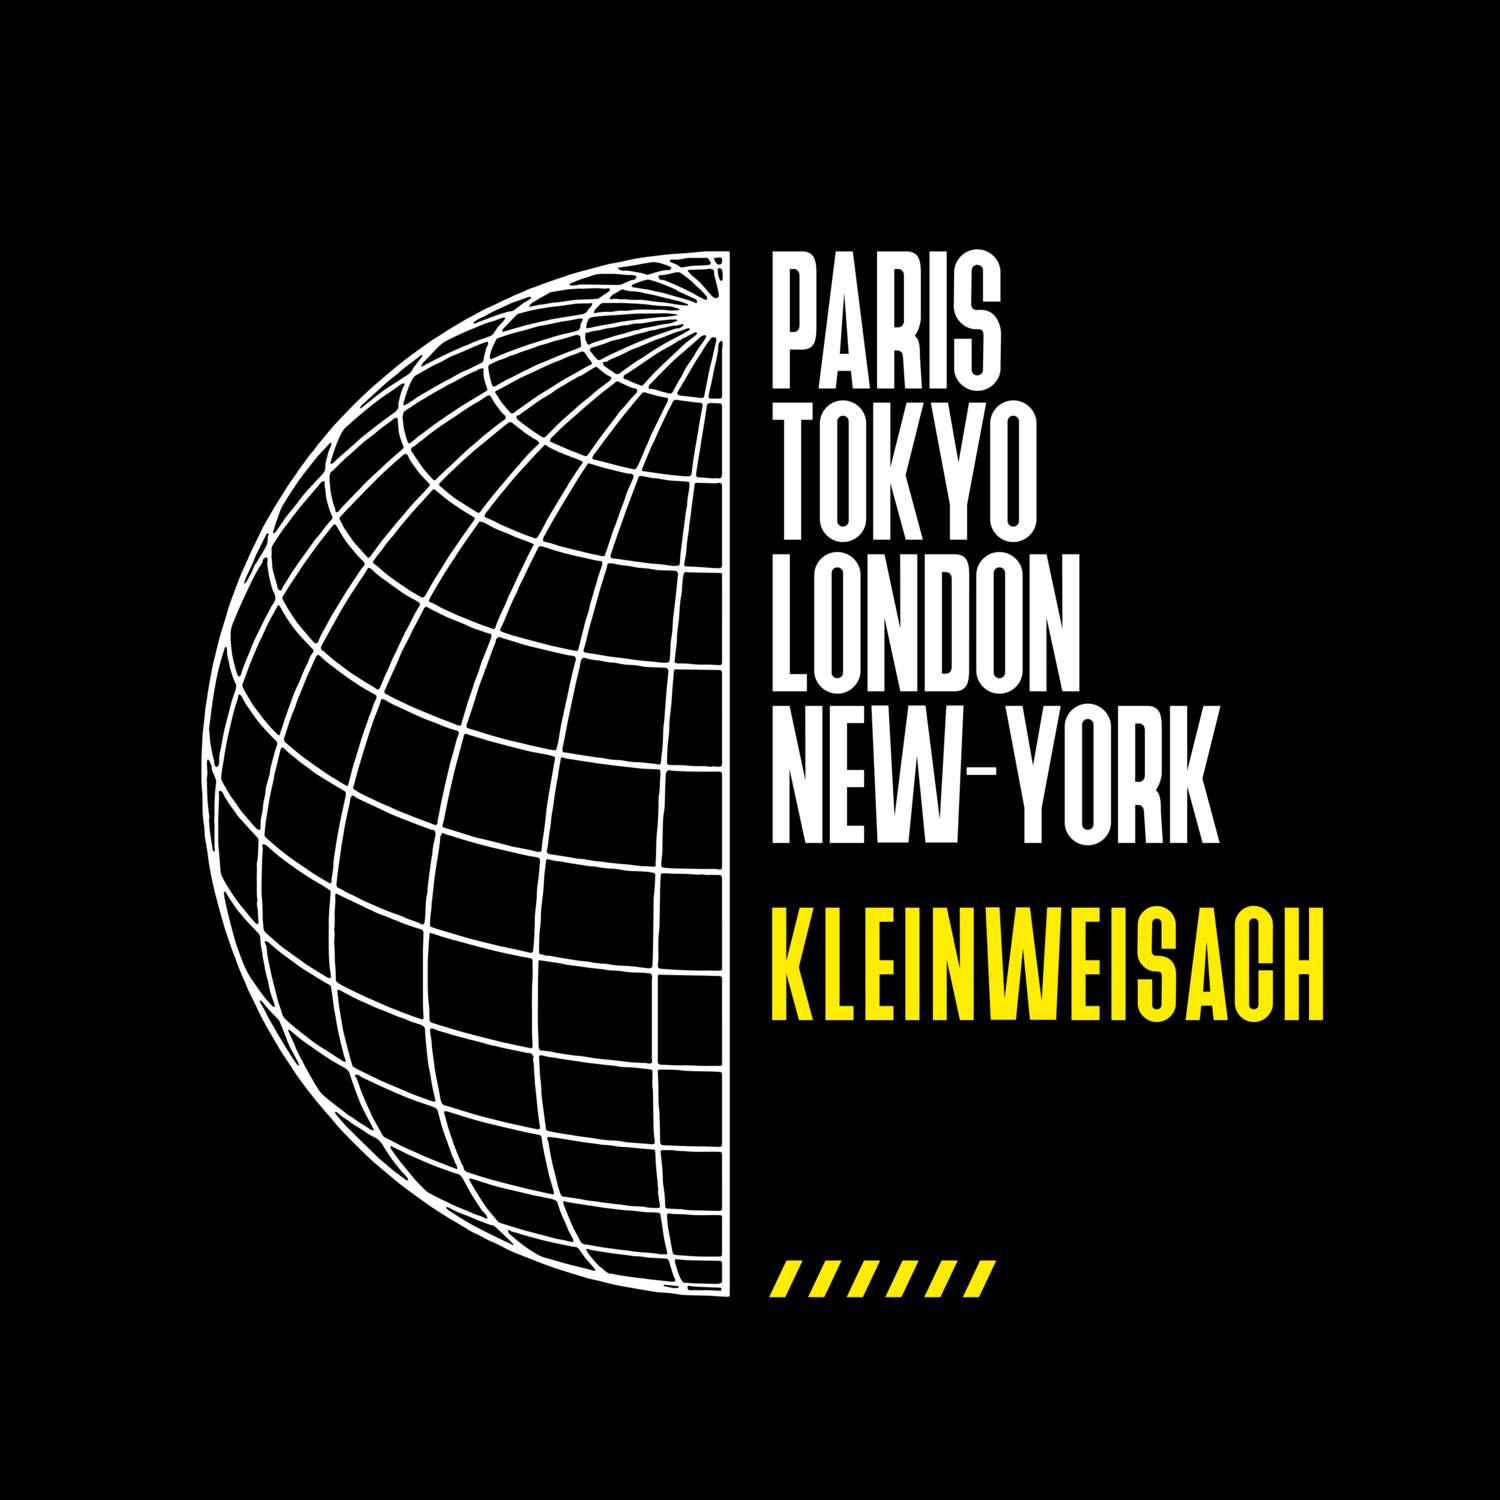 Kleinweisach T-Shirt »Paris Tokyo London«